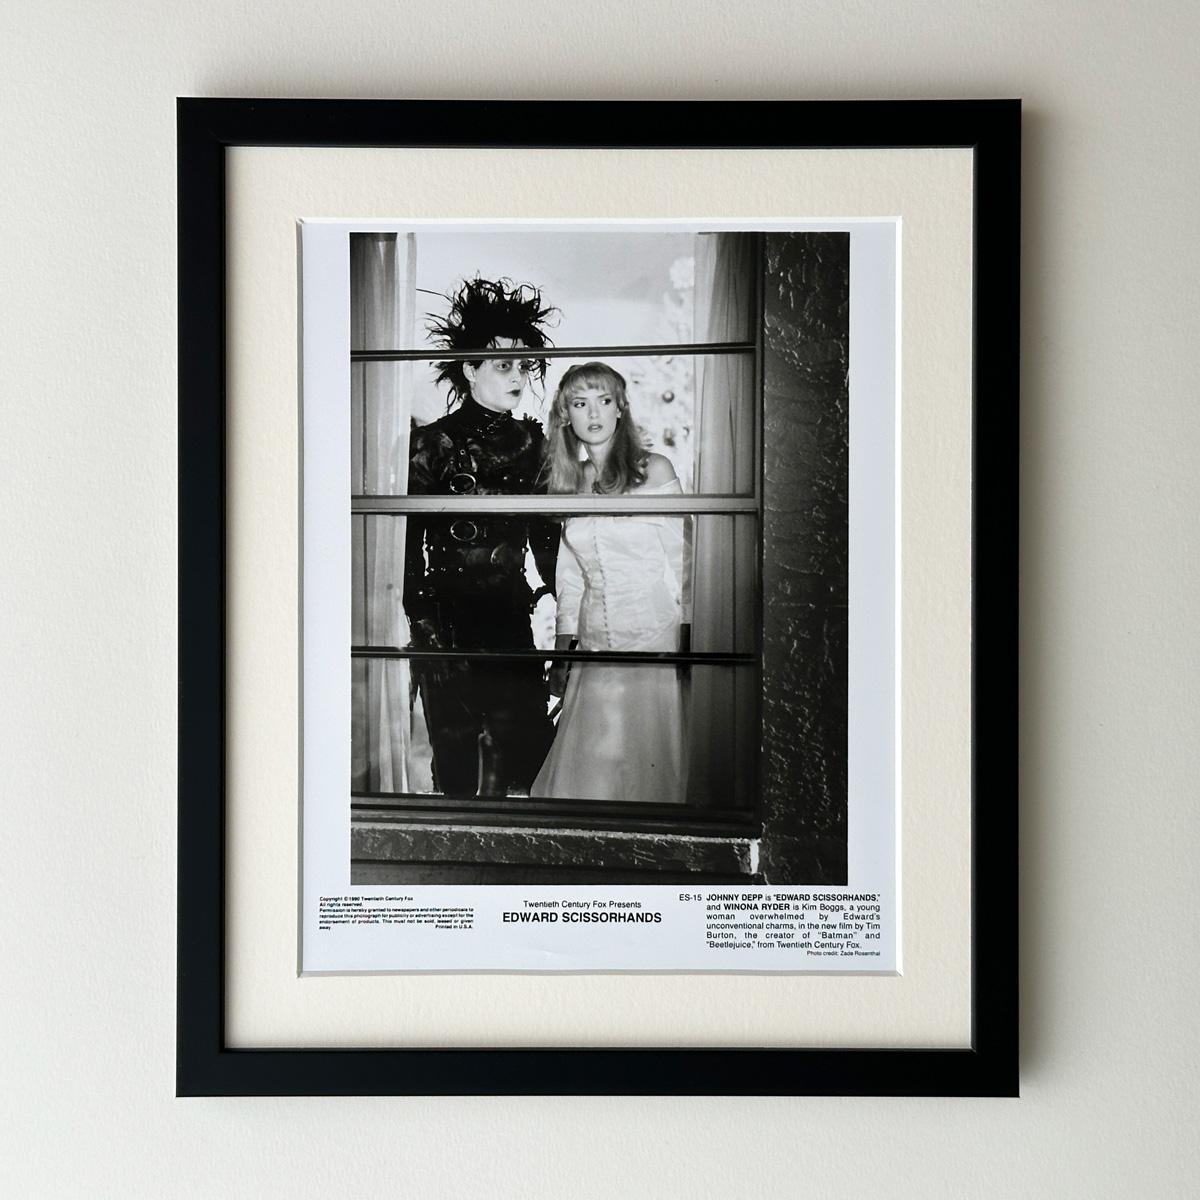 Original 20th Century Fox 8x10 inches Publicity Still für Tim Burton's 90er Jahre Klassiker Edward Scissorhands (1990) mit einem wunderschönen Bild von Johnny Depp und Winona Ryder.

Werbefotos (Film/Produktion) wurden erstellt, um die Studios bei